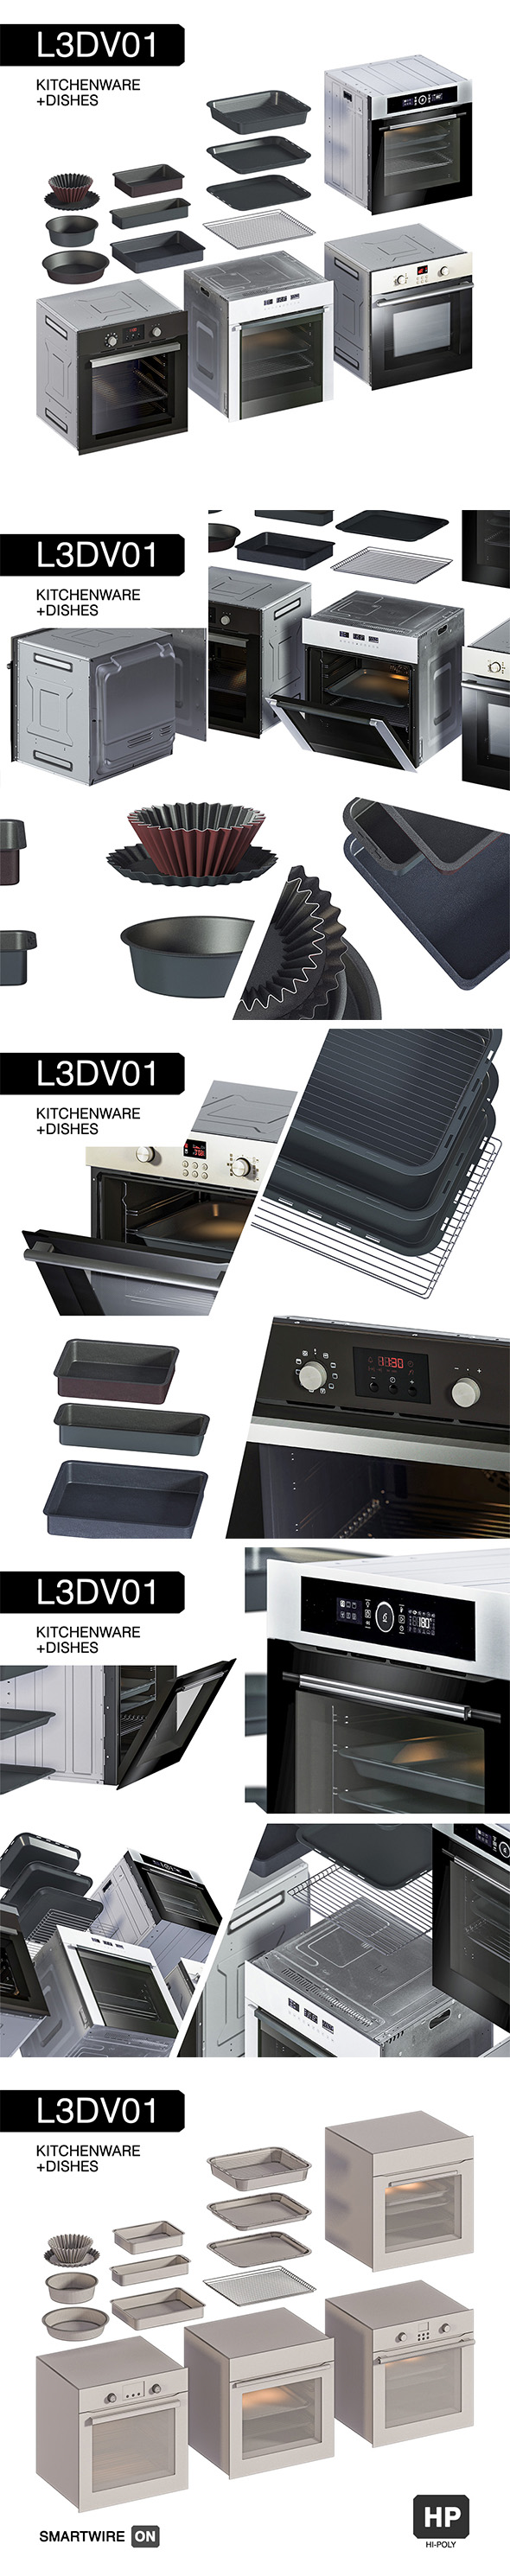 L3DV01G09 - kitchen - 3Docean 30603778